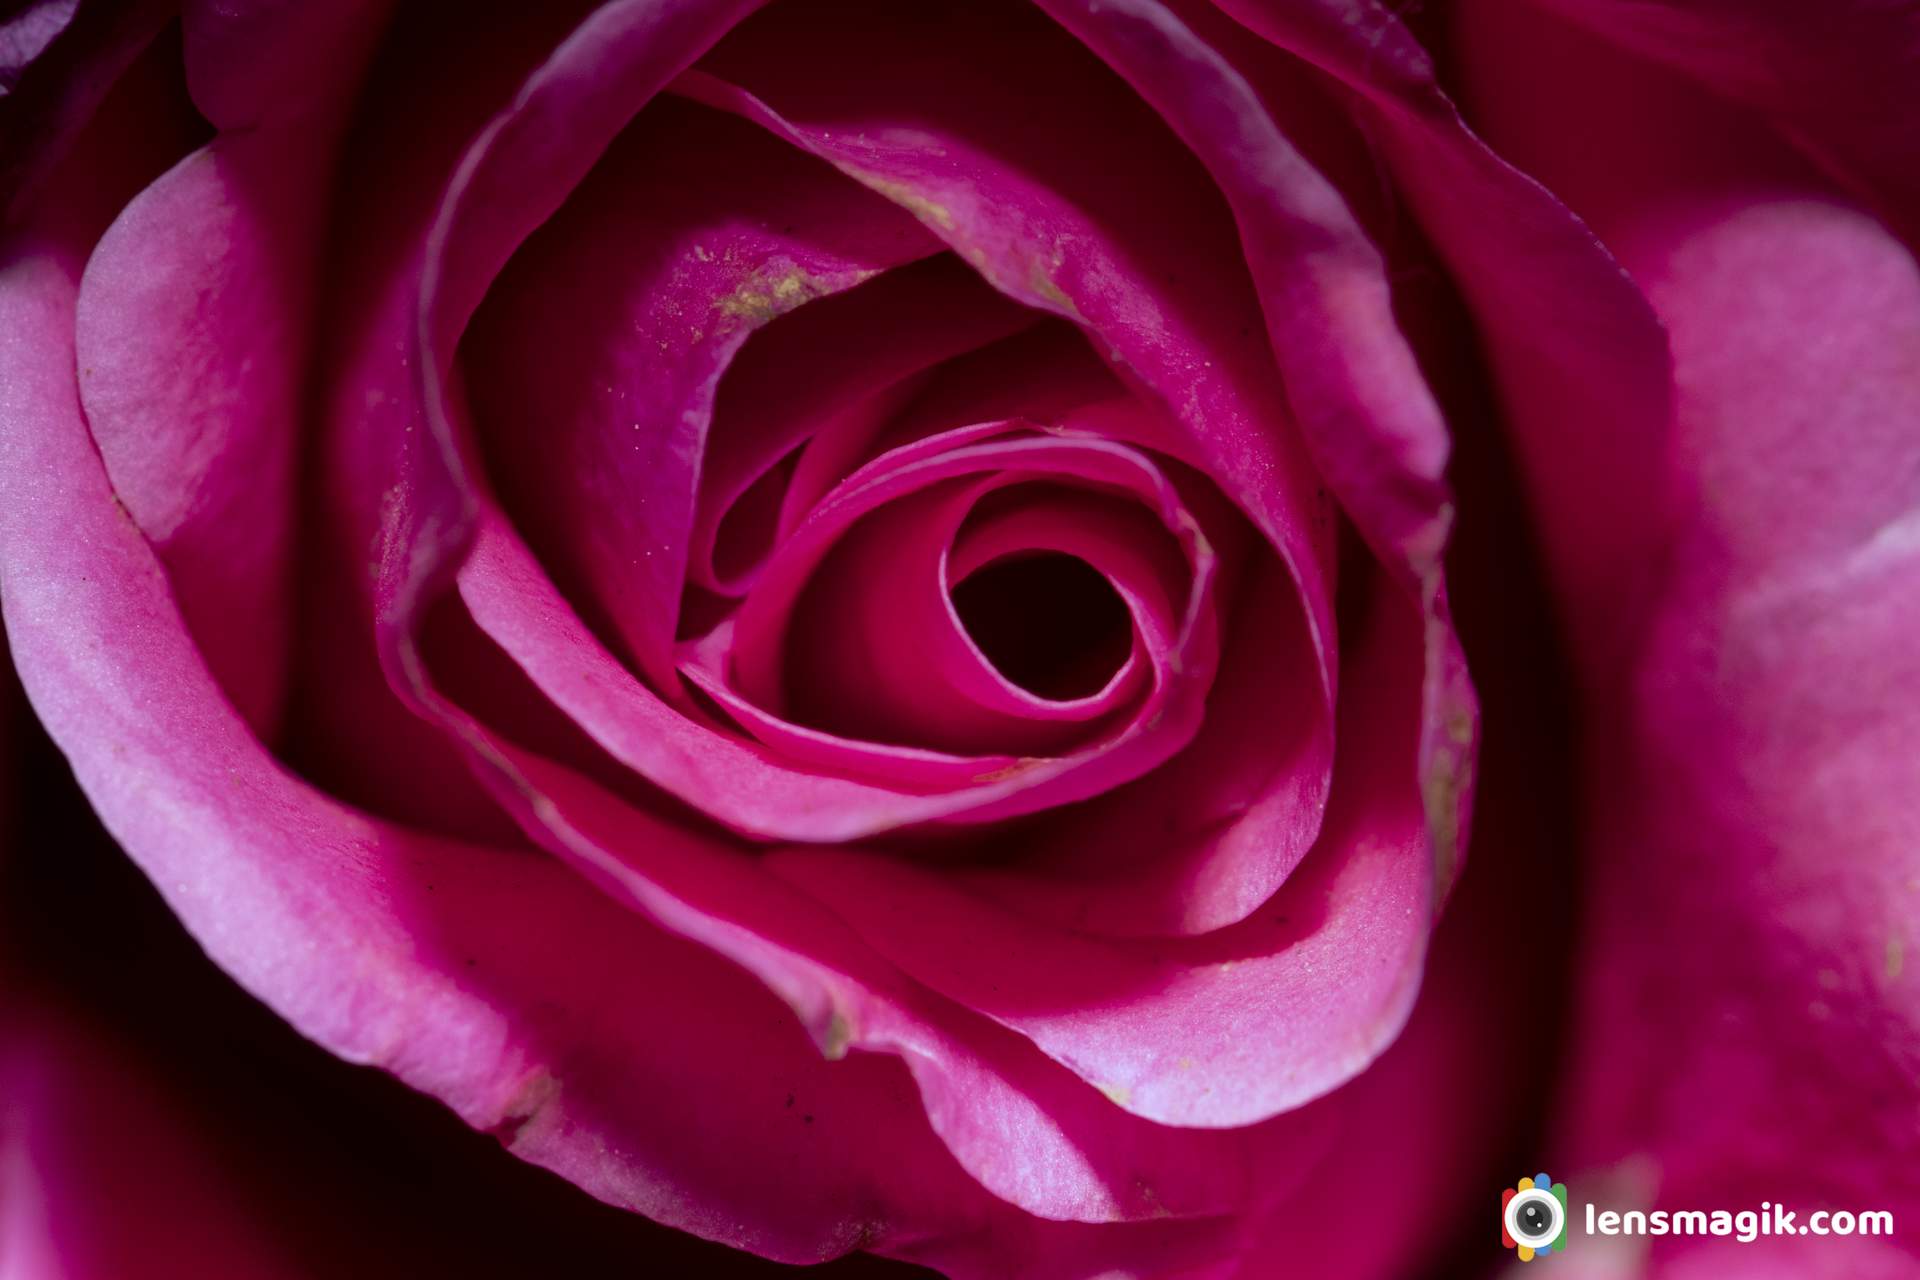 Rose flower images